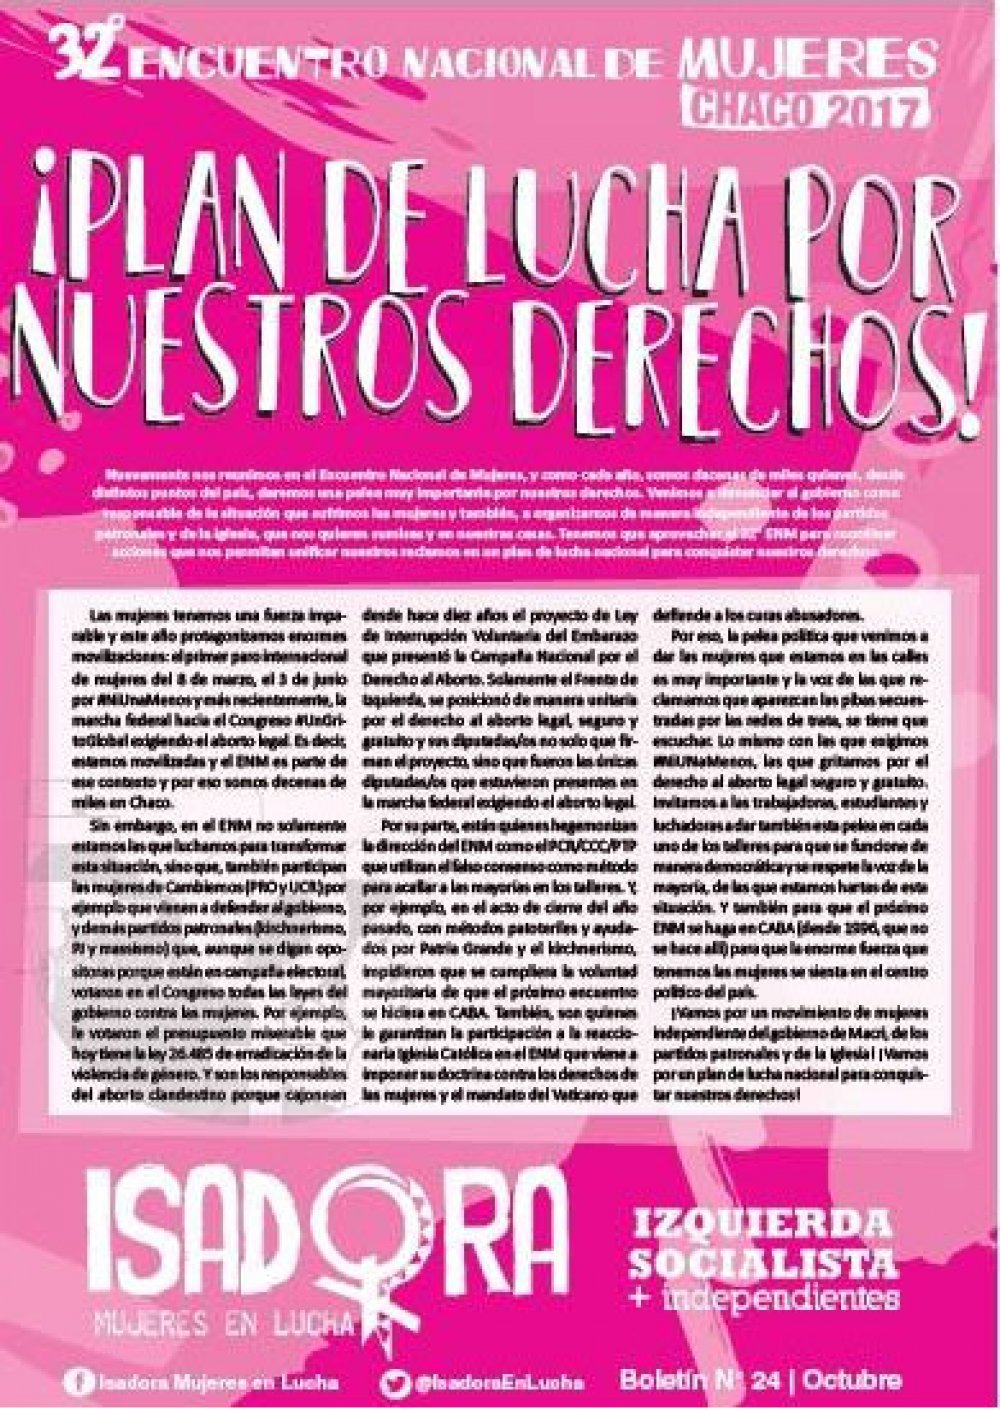 32° Encuentro Nacional de Mujeres en Chaco. ¡Conquistemos nuestros derechos!